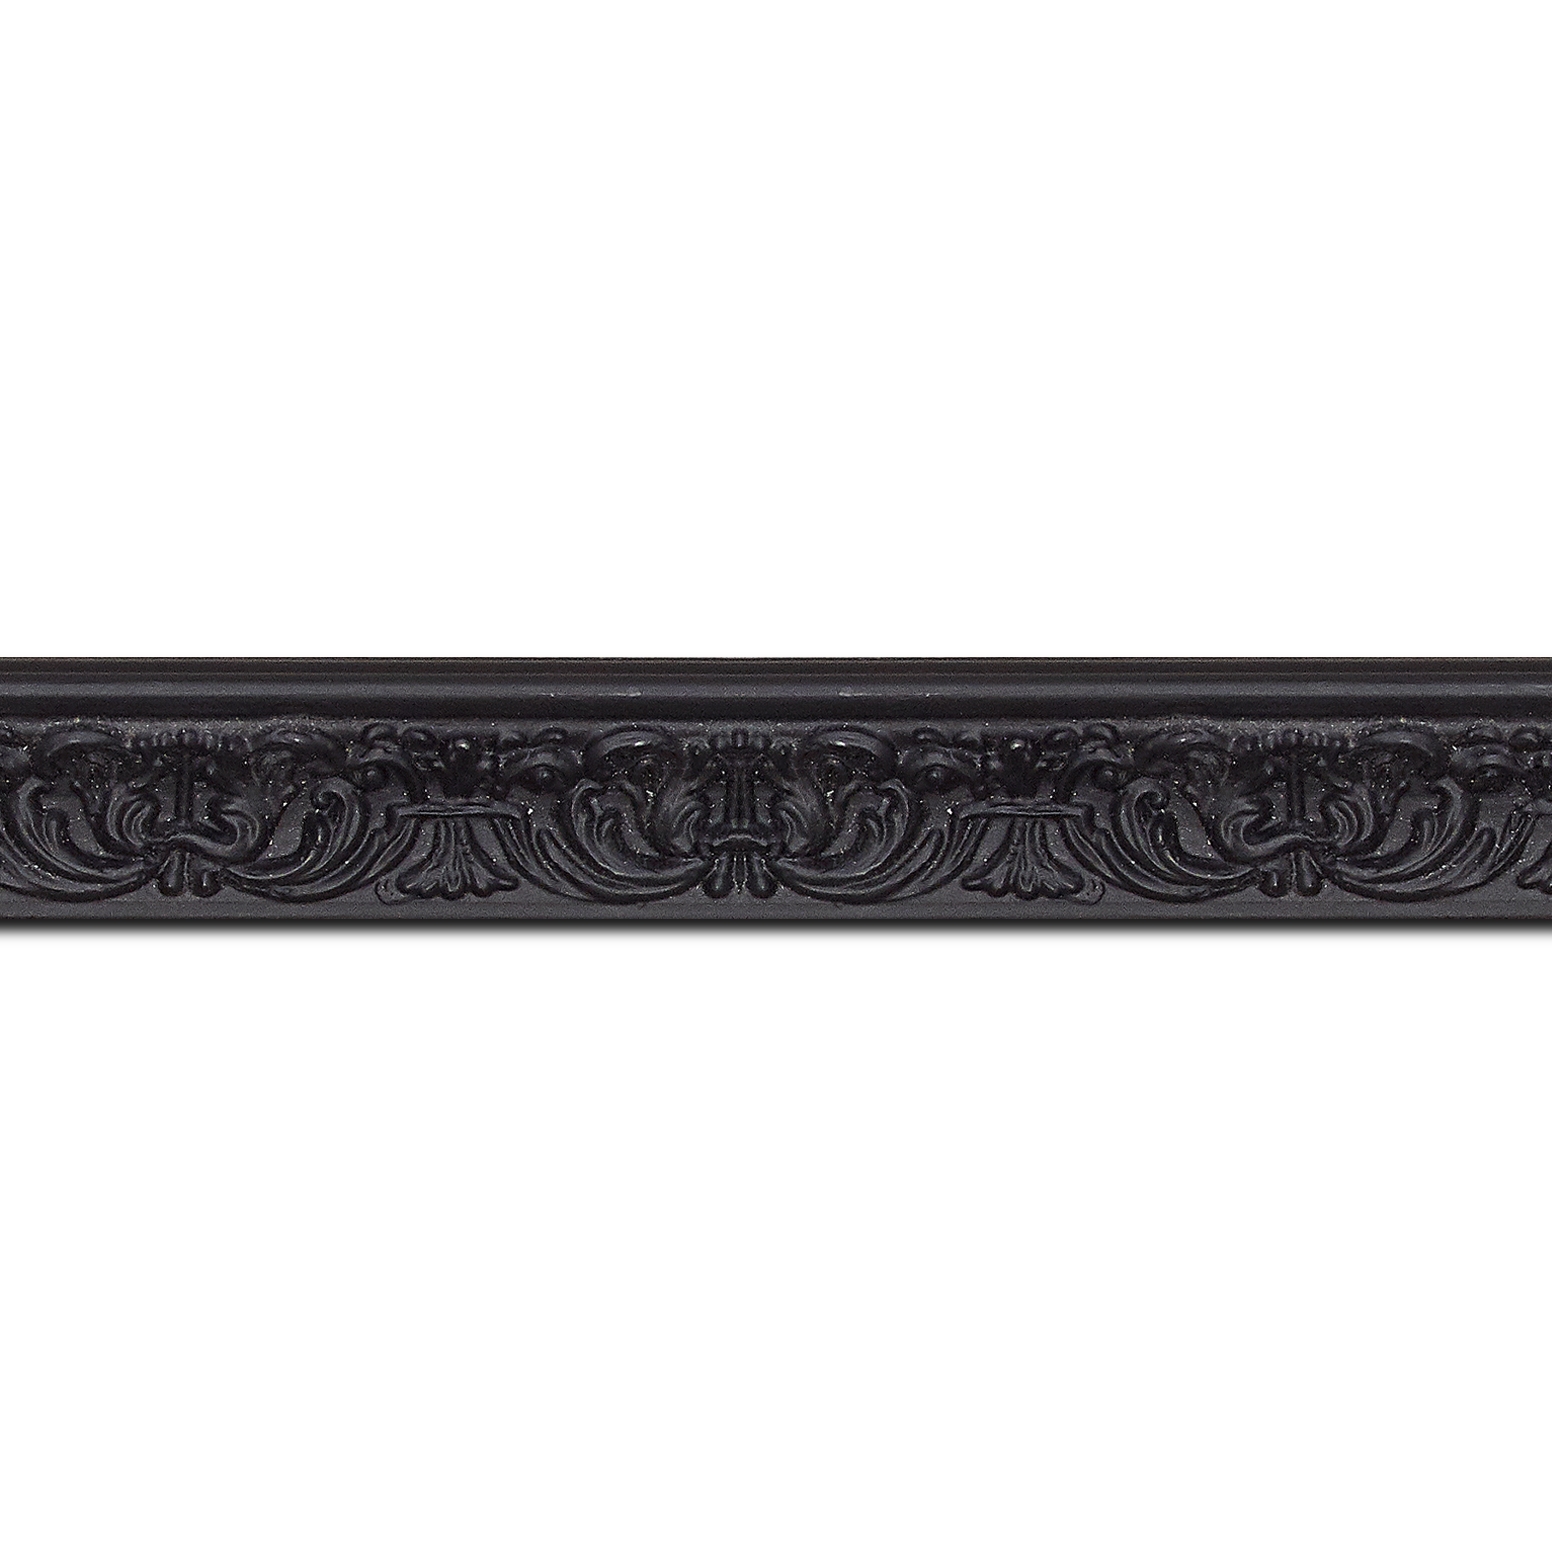 Pack par 12m, bois profil incurvé largeur 2.6cm couleur noir en relief sur fond noir (longueur baguette pouvant varier entre 2.40m et 3m selon arrivage des bois)